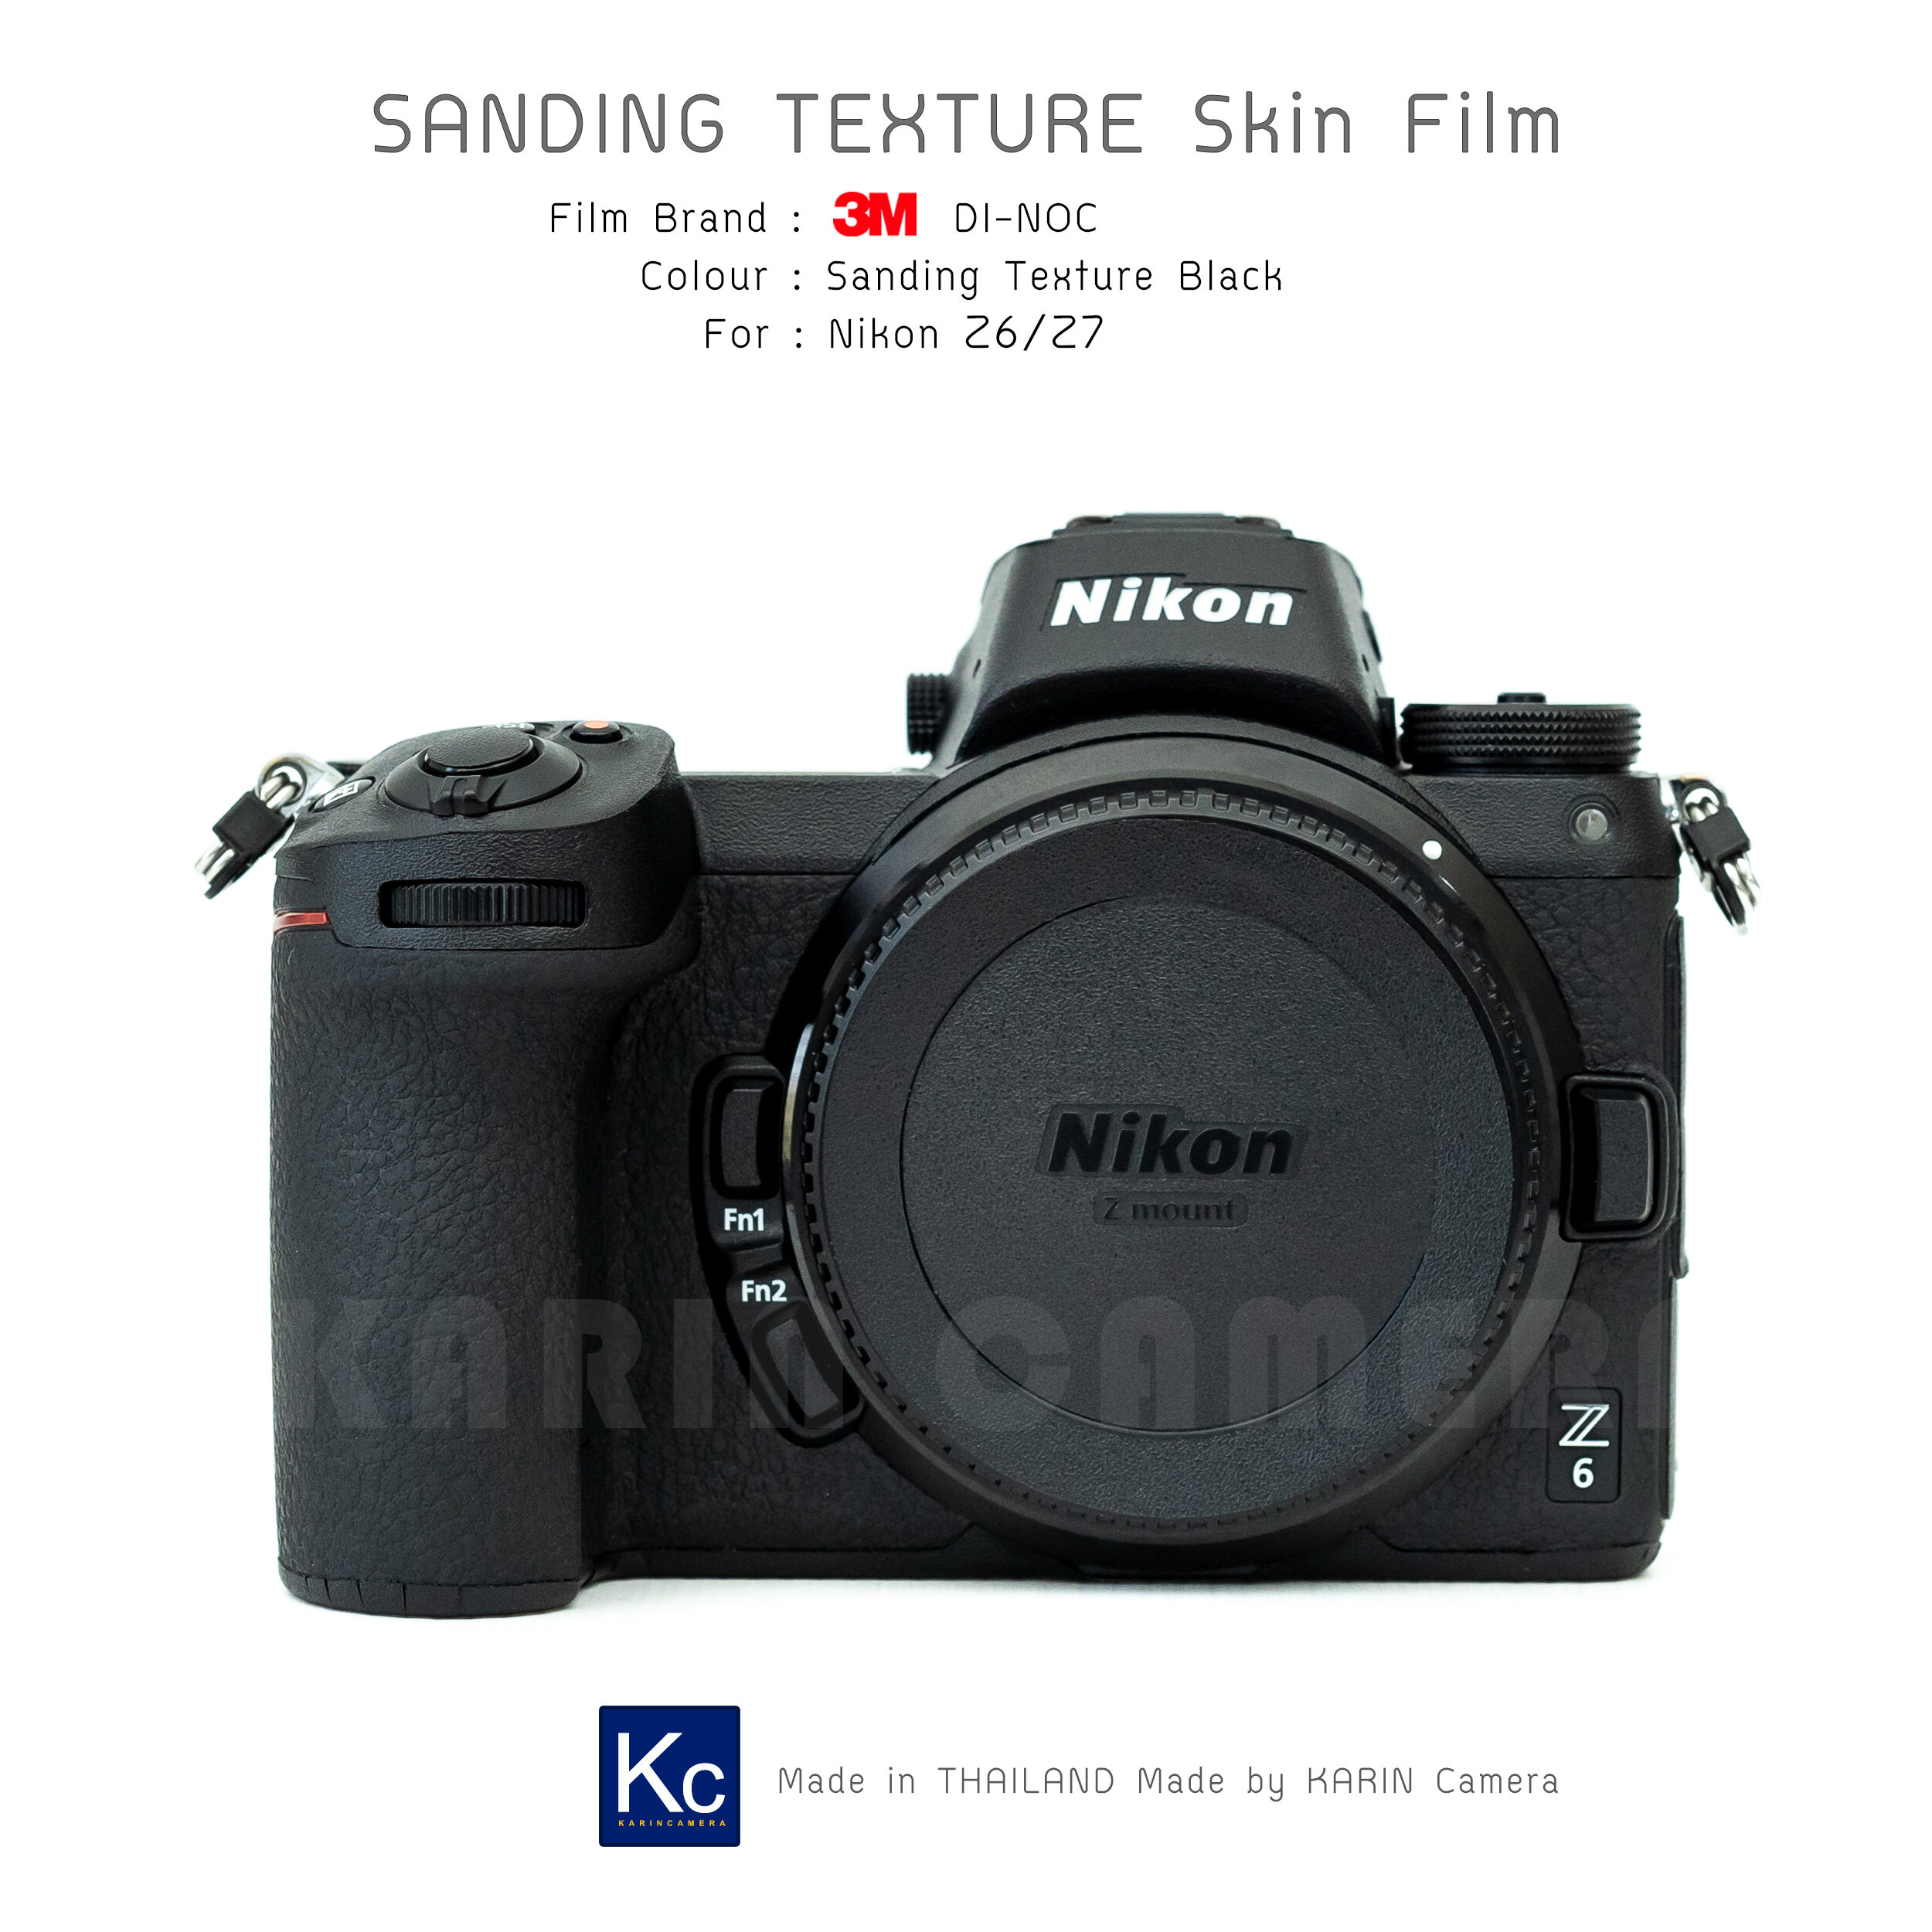 สติ๊กเกอร์ ฟิล์มกันรอย กล้อง Nikon Z6/Z7  ฟิล์ม 3M แท้ 100%  3M series1080 , 3M series2080 , 3M Di-NOC   (Protector film for Nikon Z6/Z7) สี ดำ สี ดำ